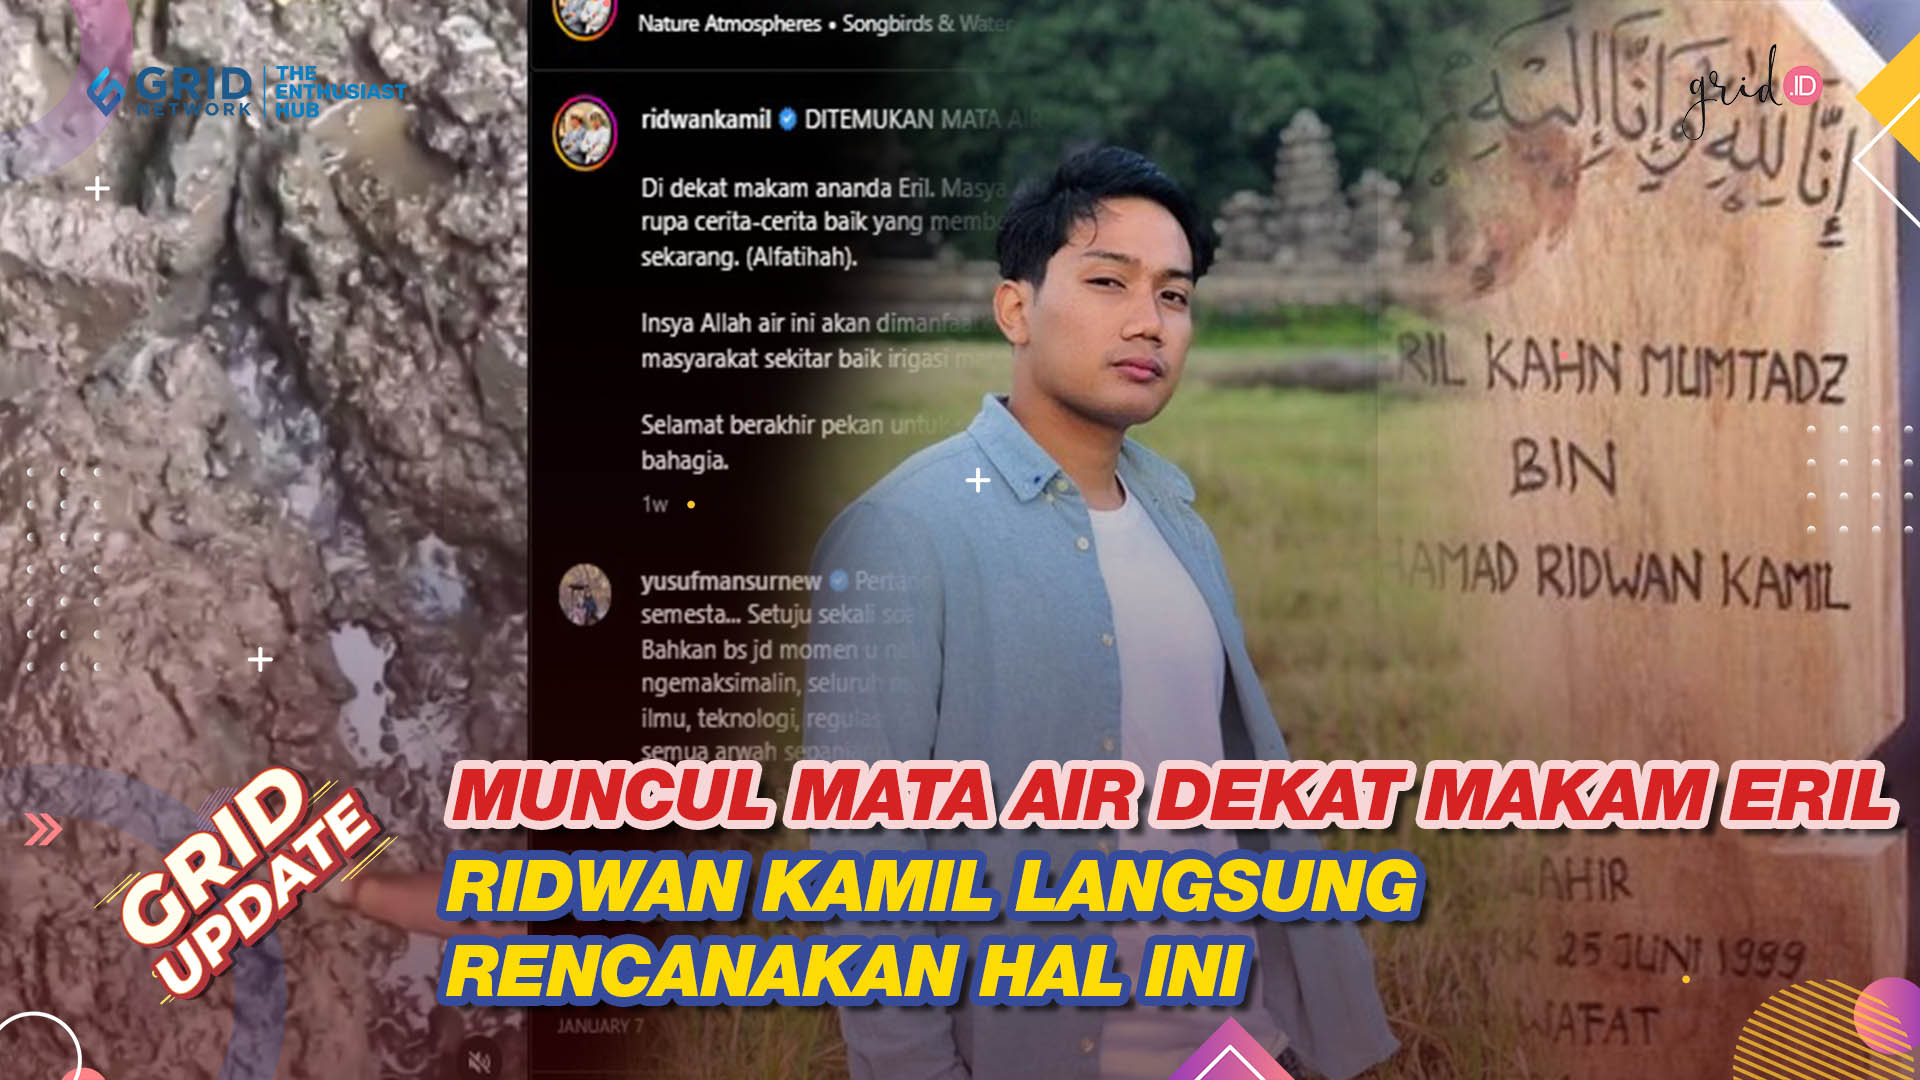 Muncul Mata Air di Dekat Makam Eril, Ridwan Kamil Langsung Rencanakan 2 Hal Ini untuk Warga